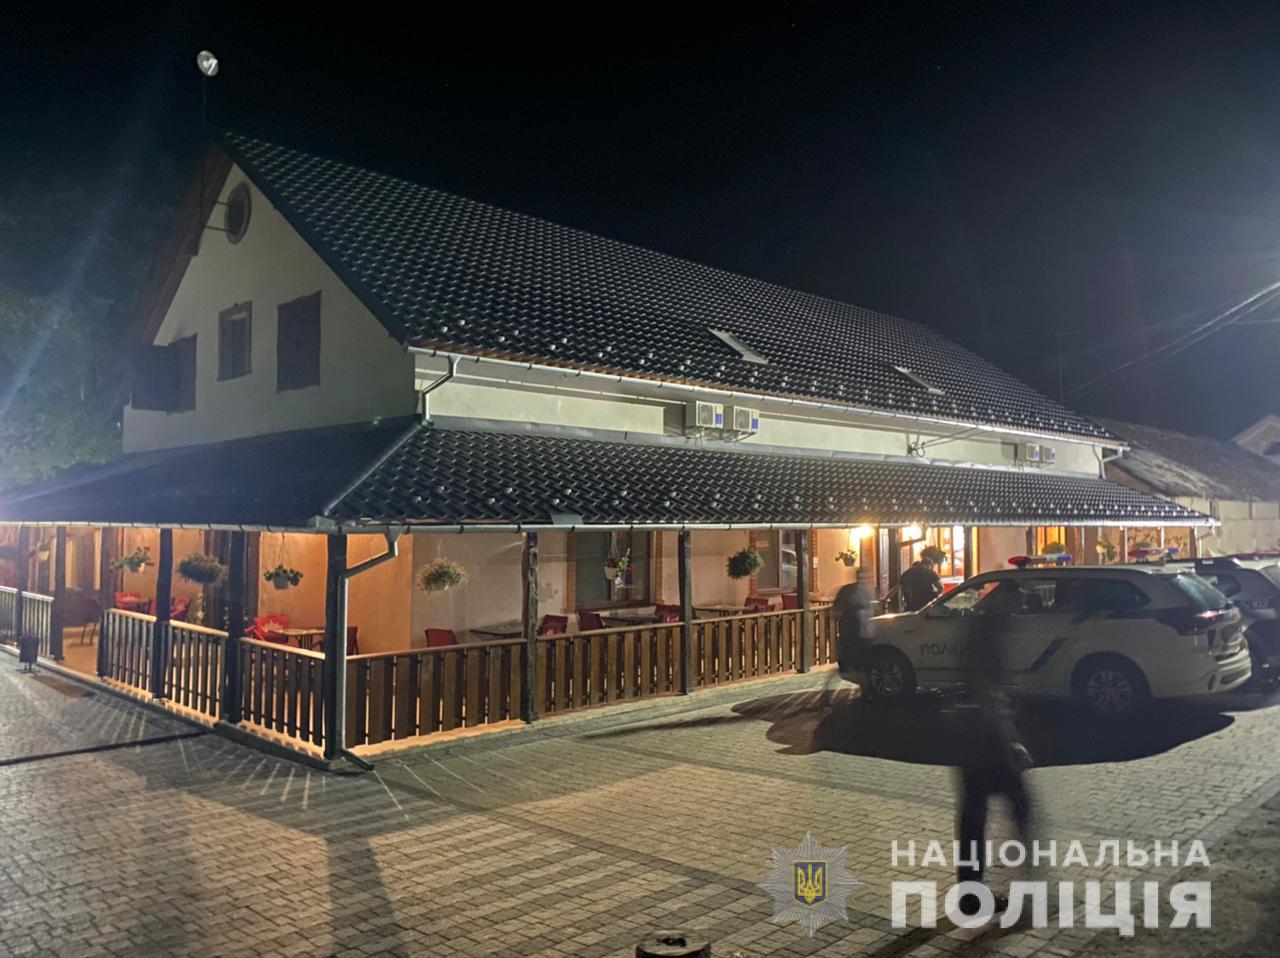 Подробиці інциденту: на Берегівщині поліція затримала жителя Мукачева, який влаштував стрілянину у розважальному закладі (ФОТО)